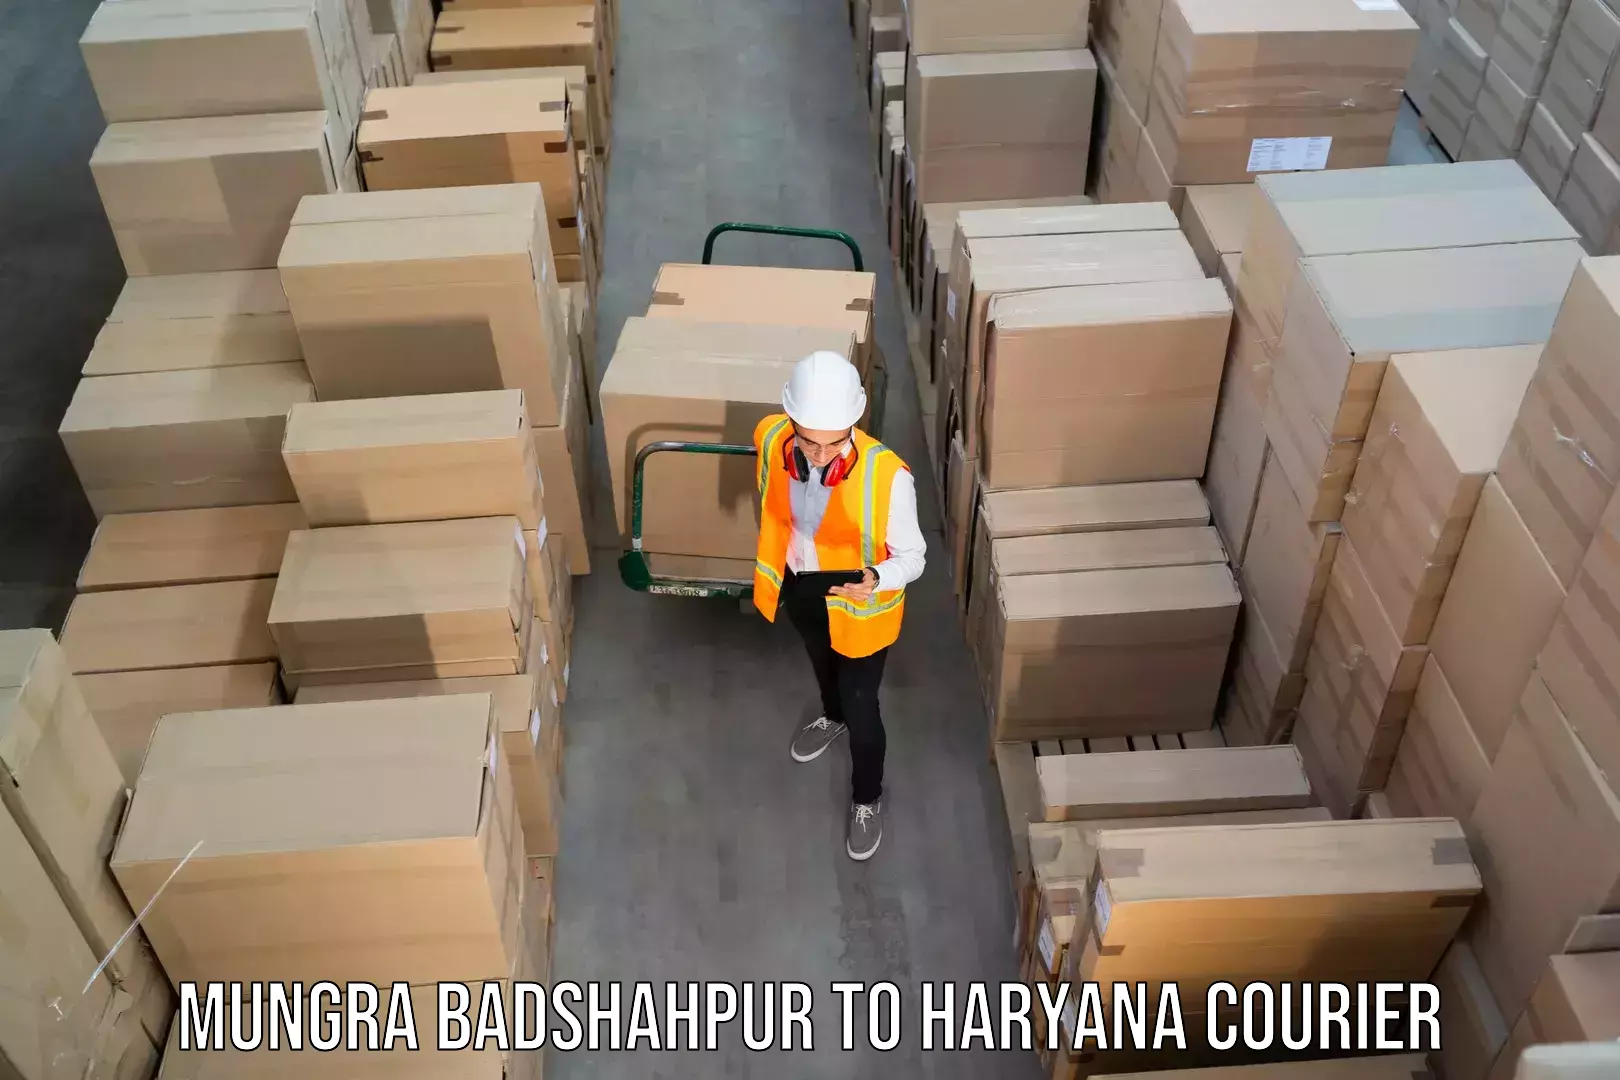 24/7 shipping services Mungra Badshahpur to Chaudhary Charan Singh Haryana Agricultural University Hisar